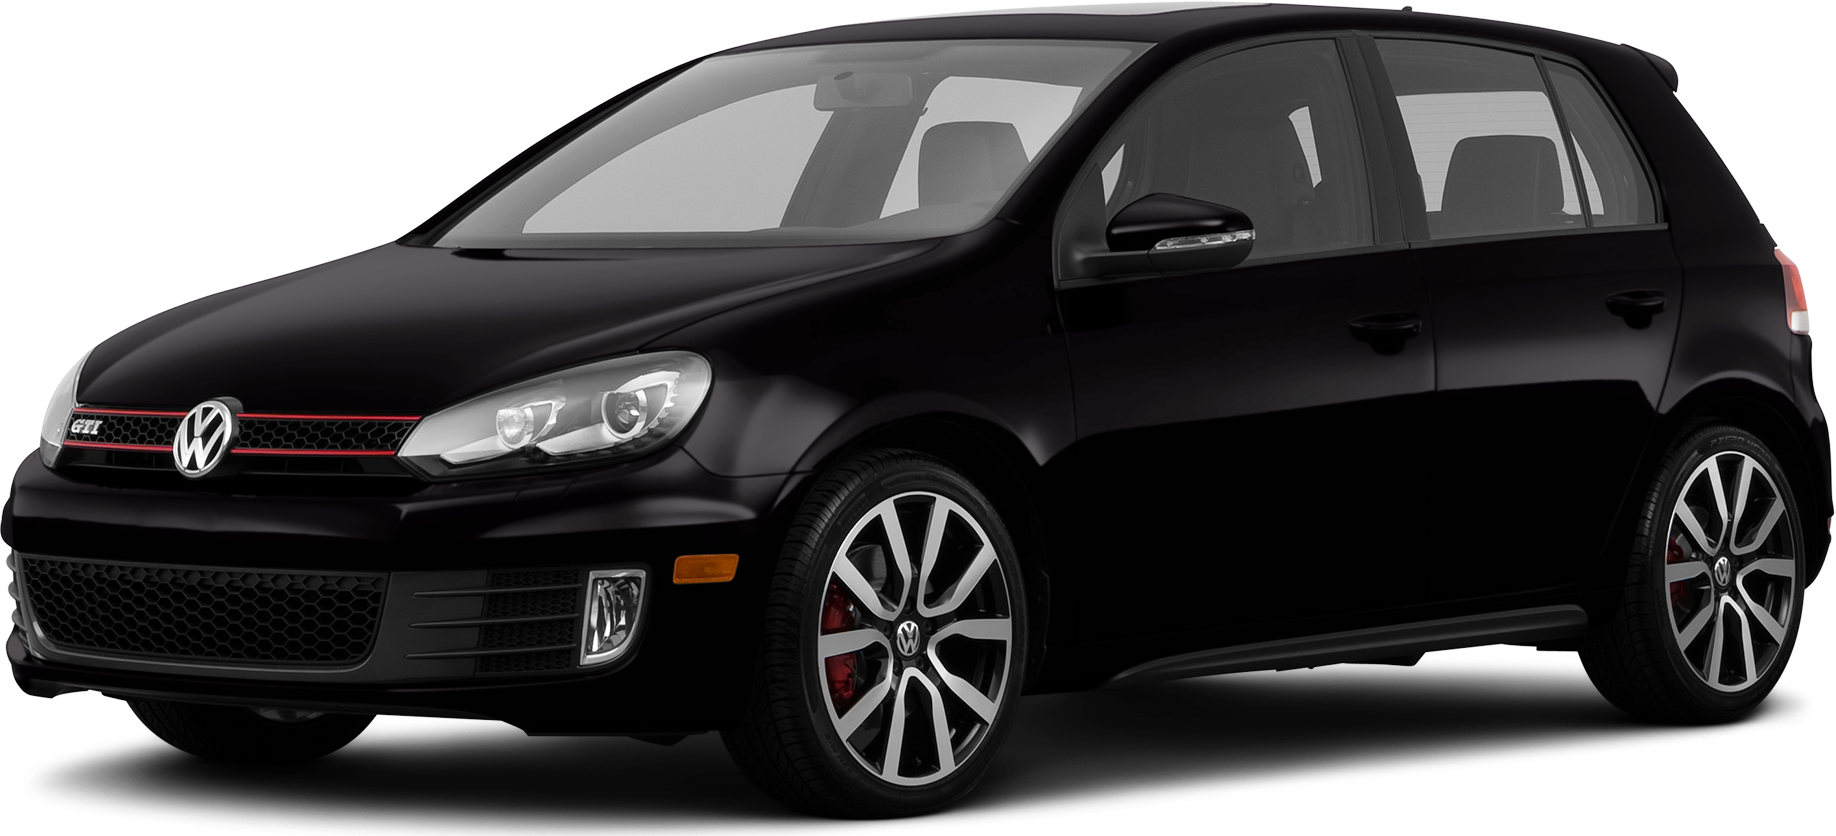 2013 Volkswagen GTI Price, Value, Ratings & Reviews